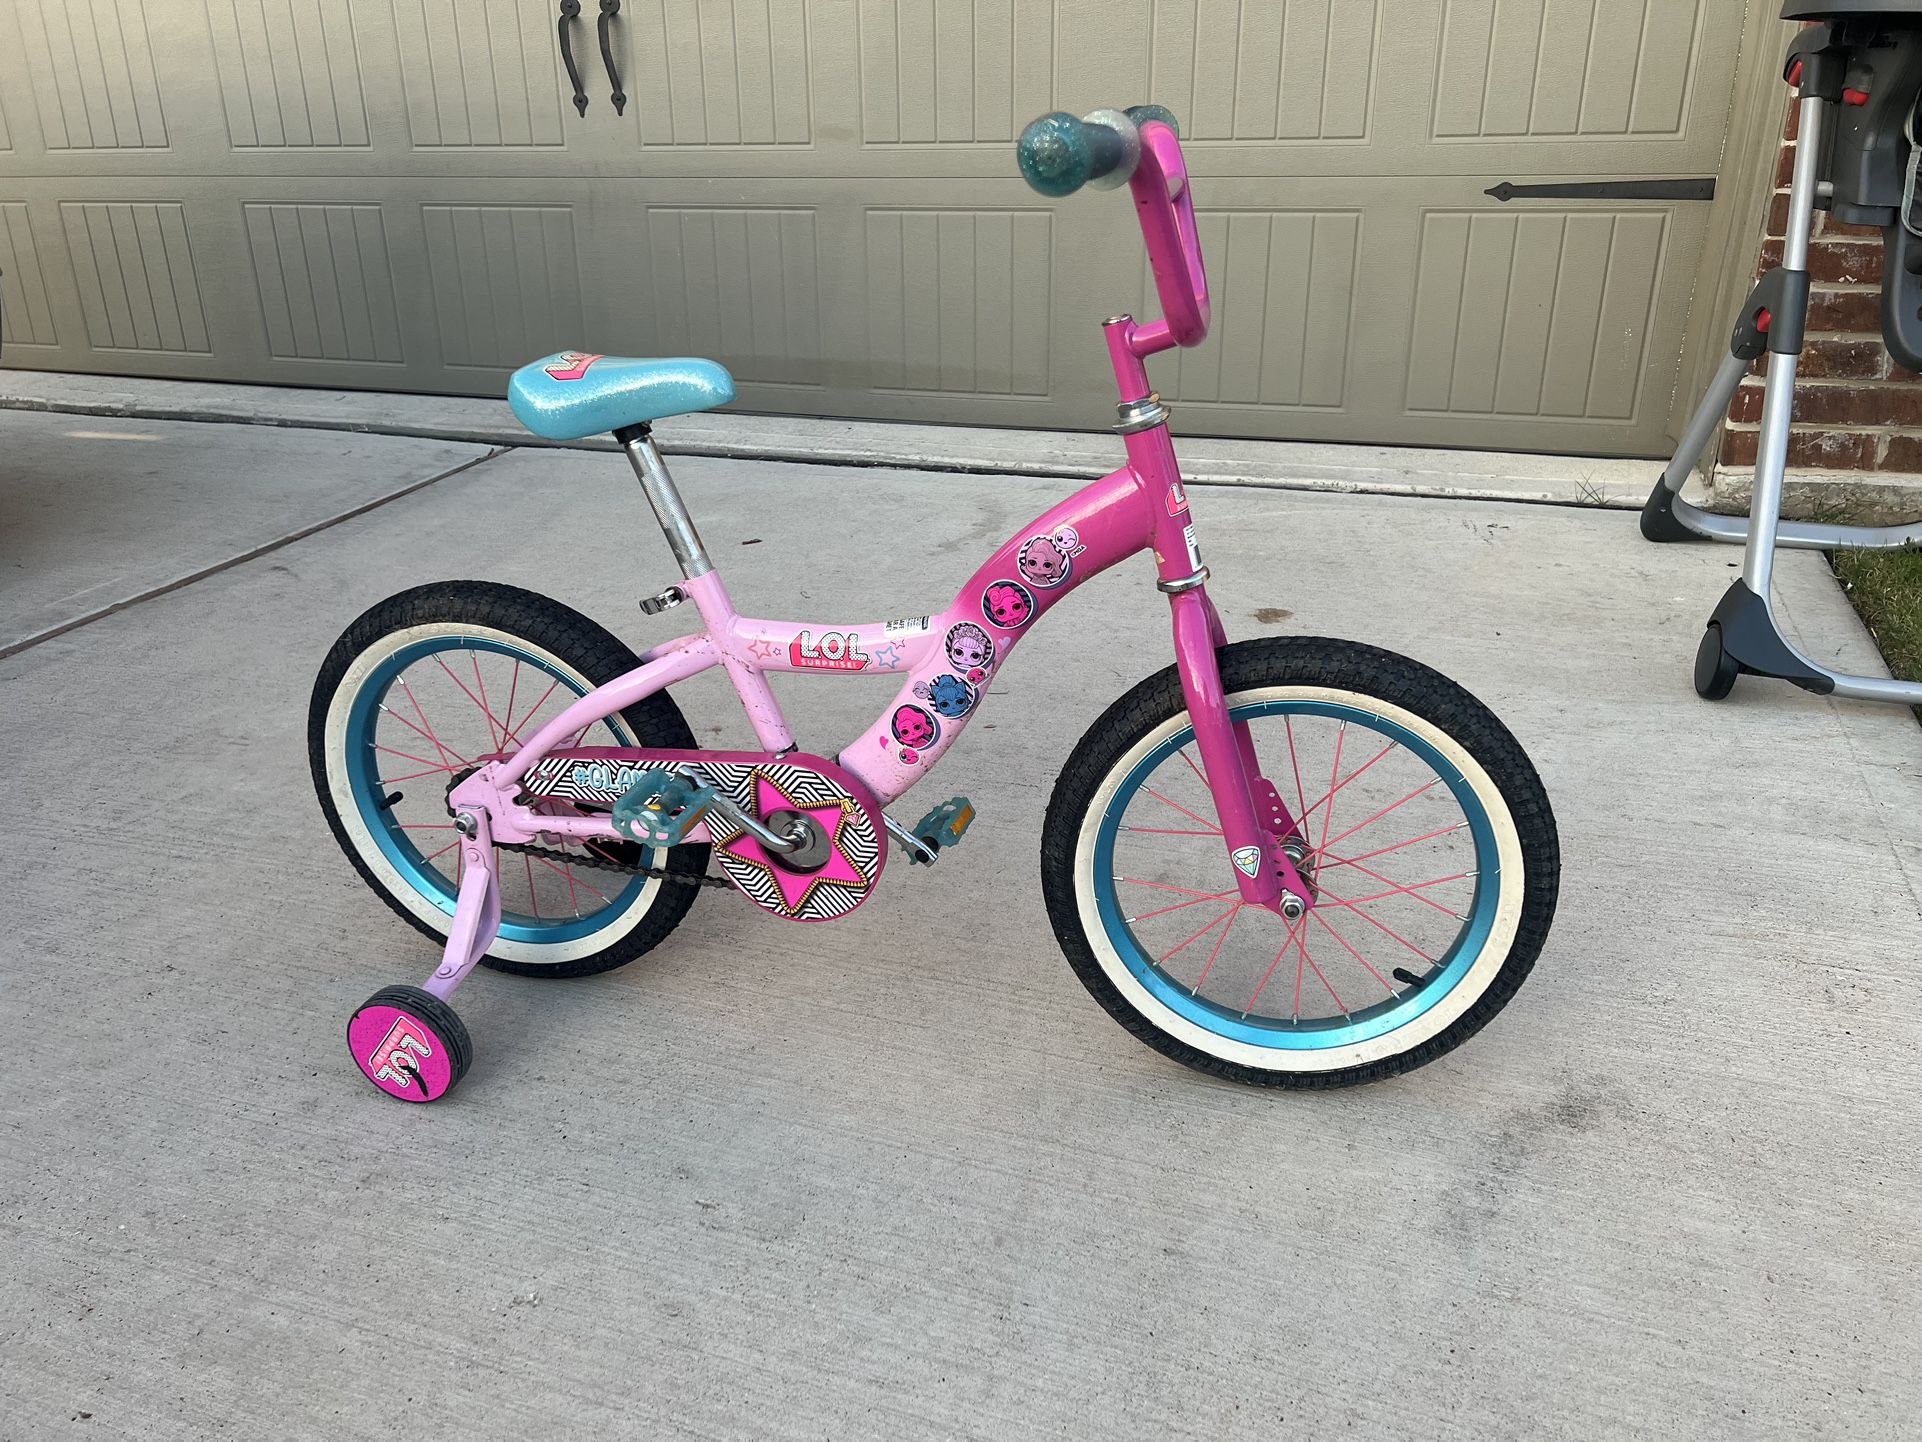 LOL Surprise 16" Girls' Bike - Pink